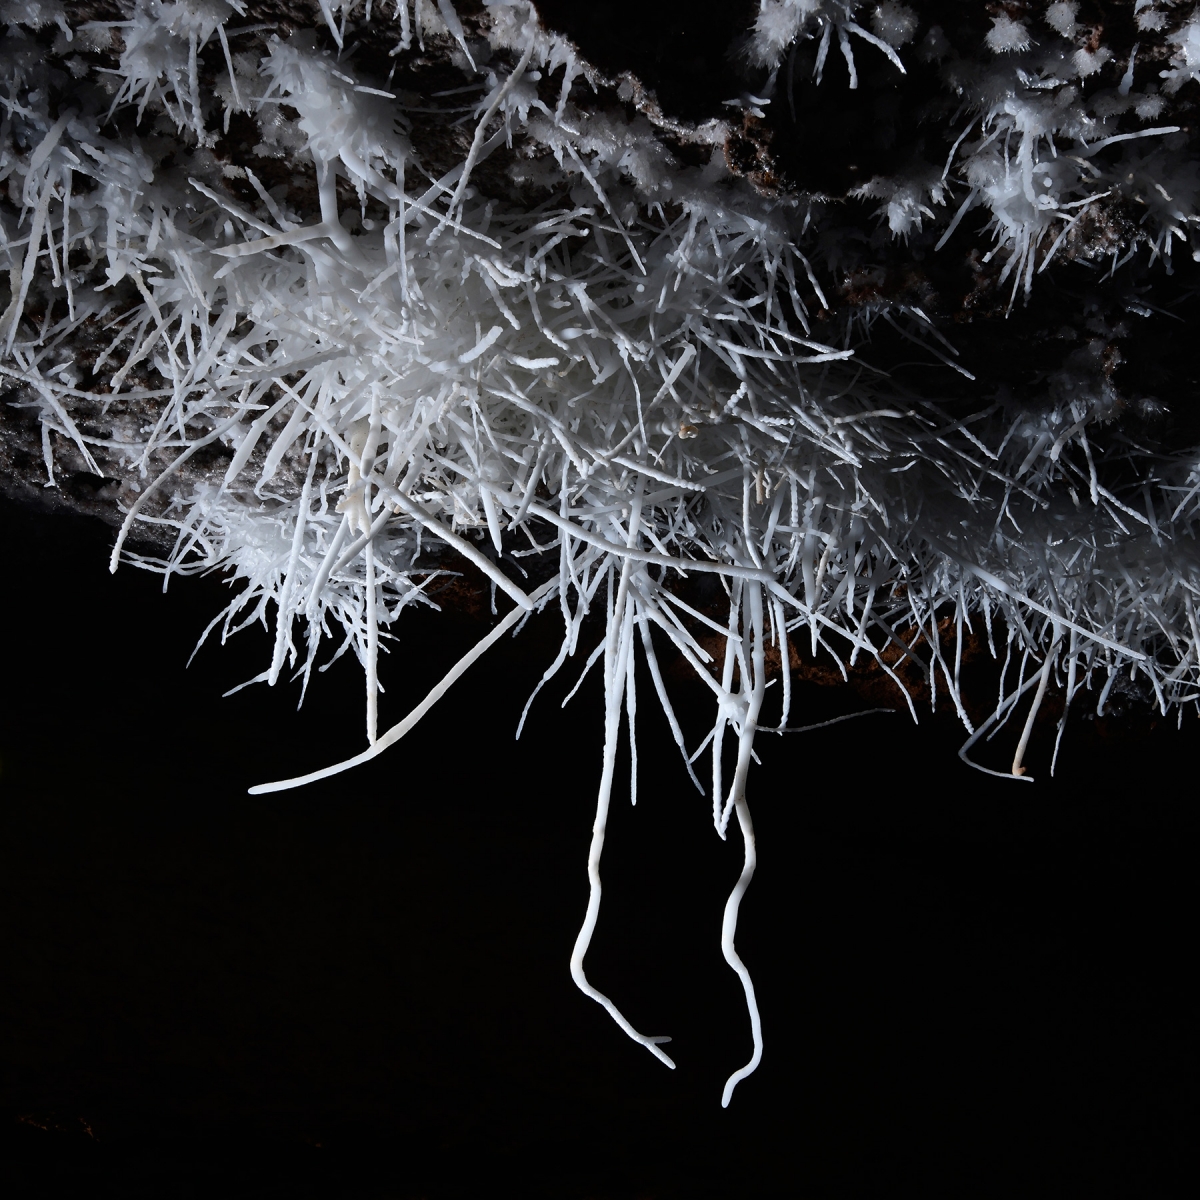 Breezeaway Cave (USA - Colorado) - Détail d'un bouquet d'aragonite blanche au plafond